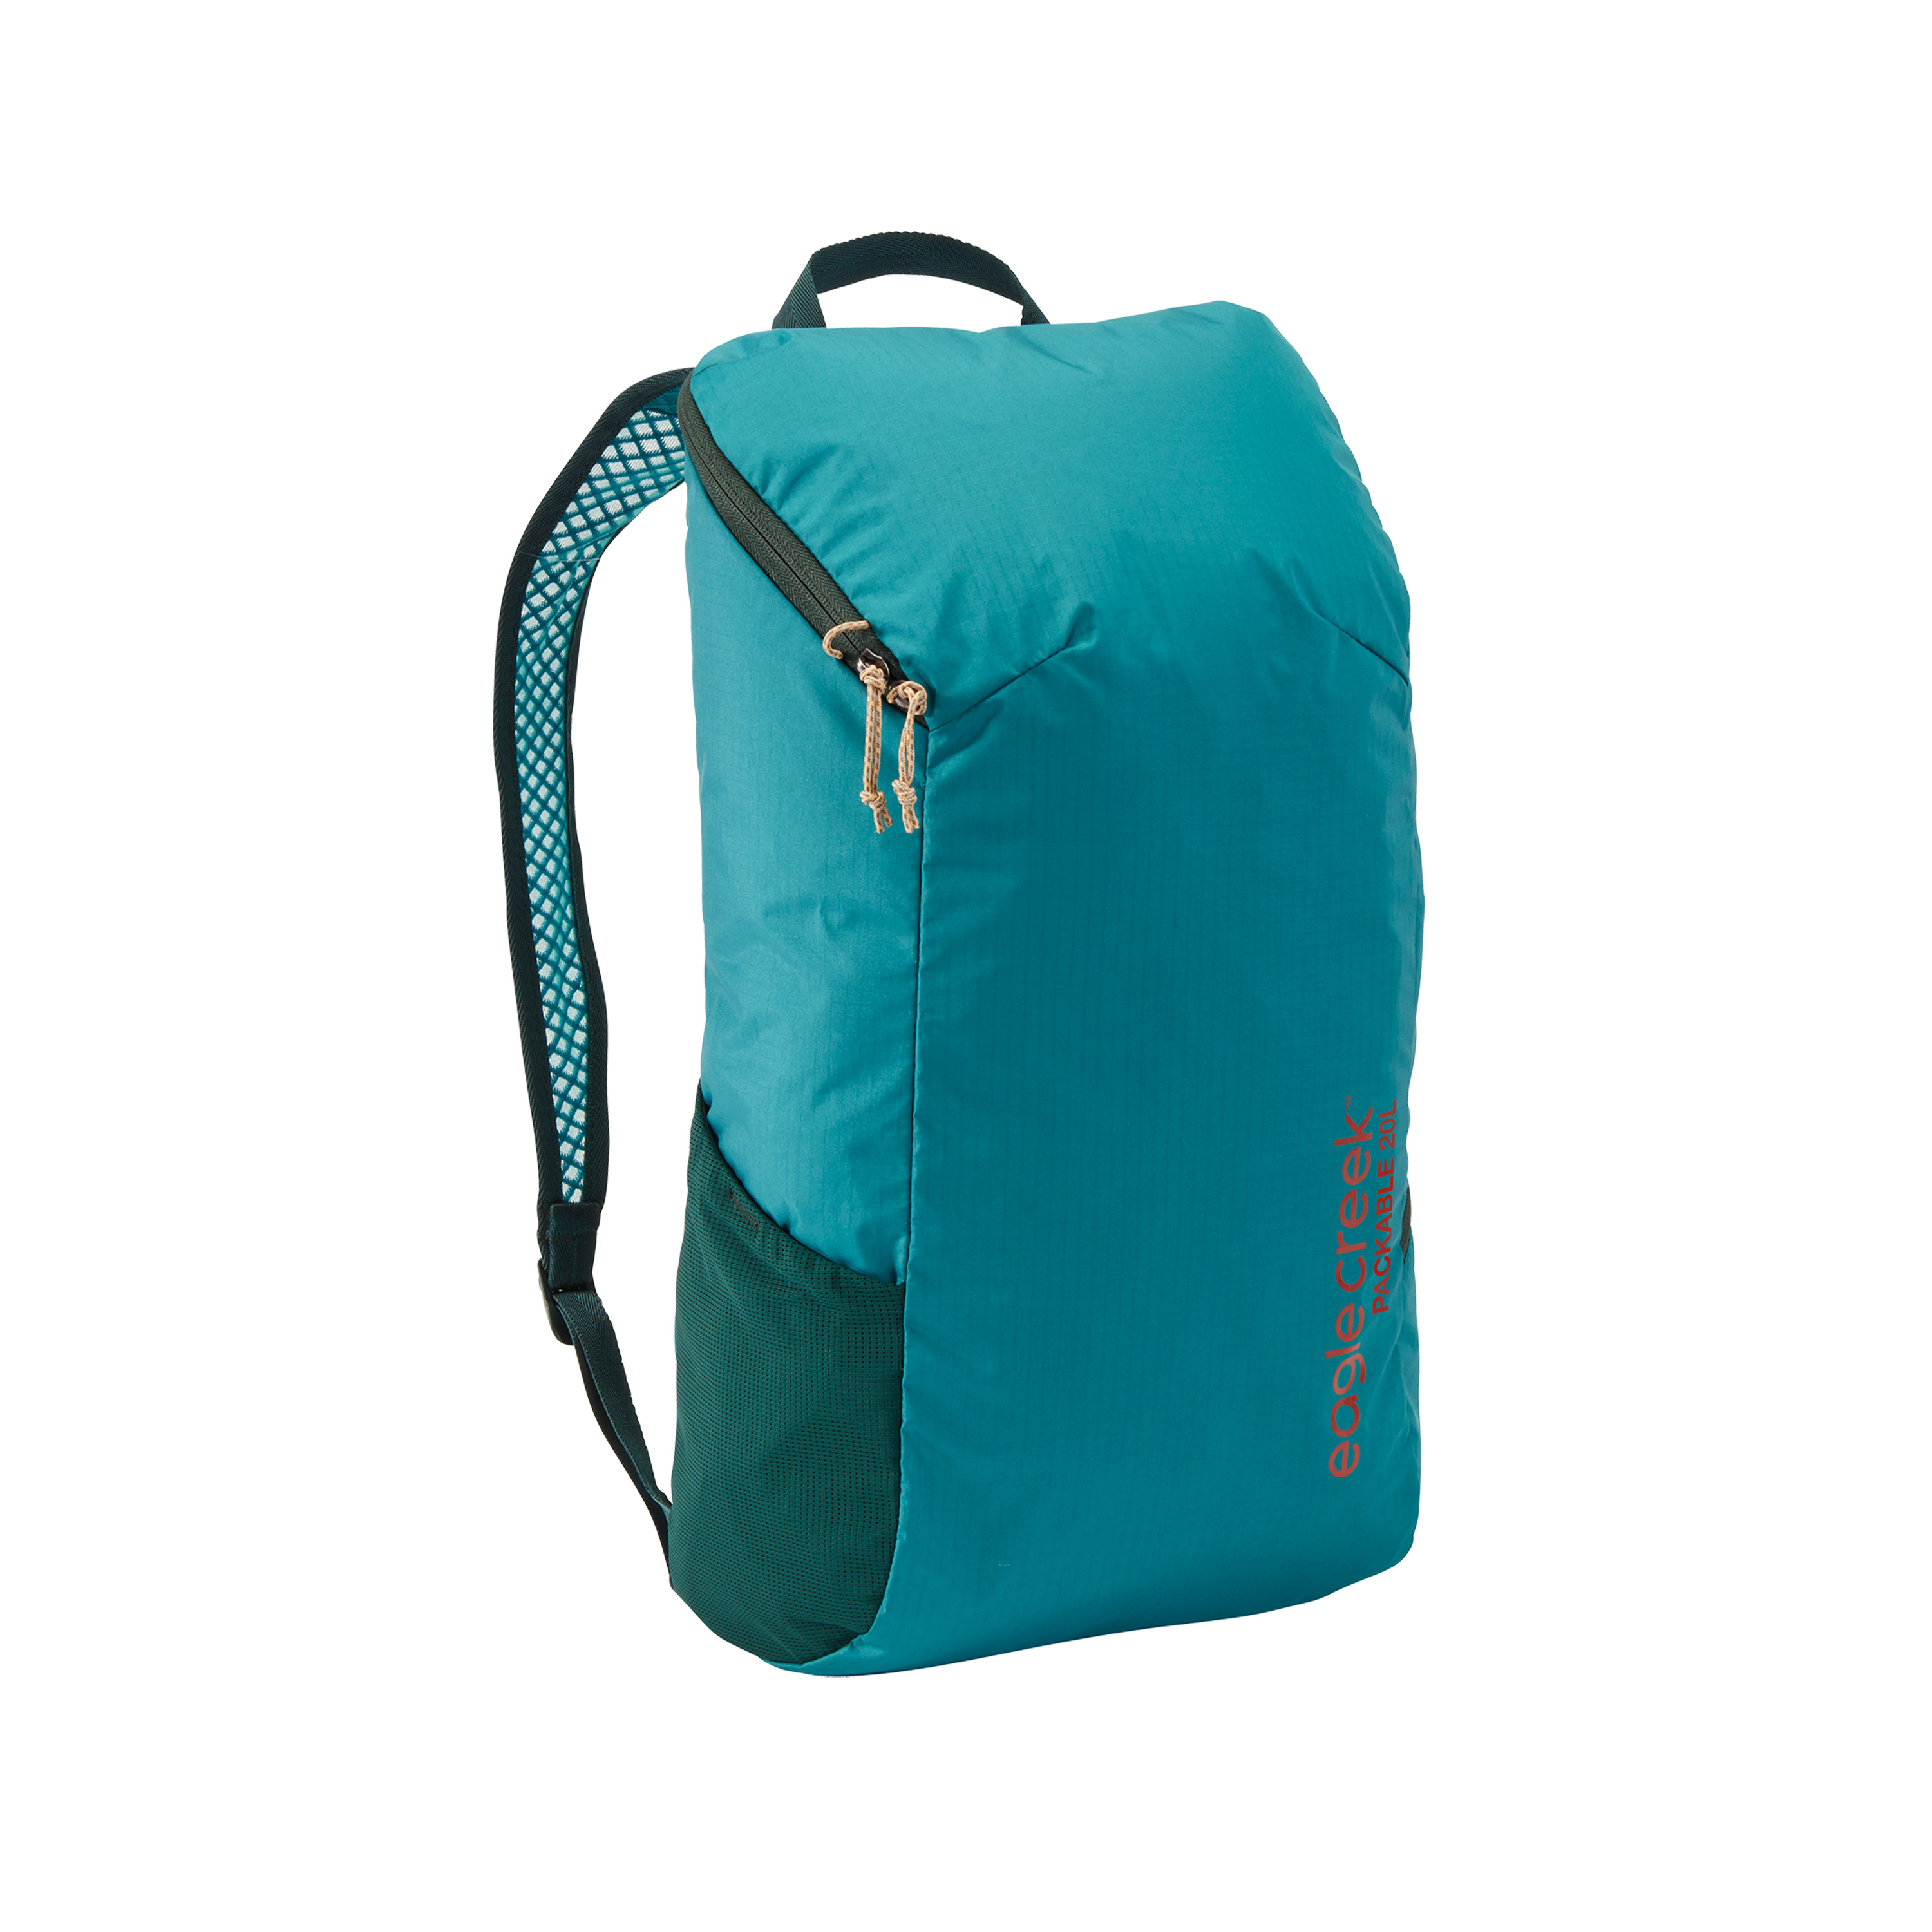 Eagle Creek Lightweight Packable Backpack 20L